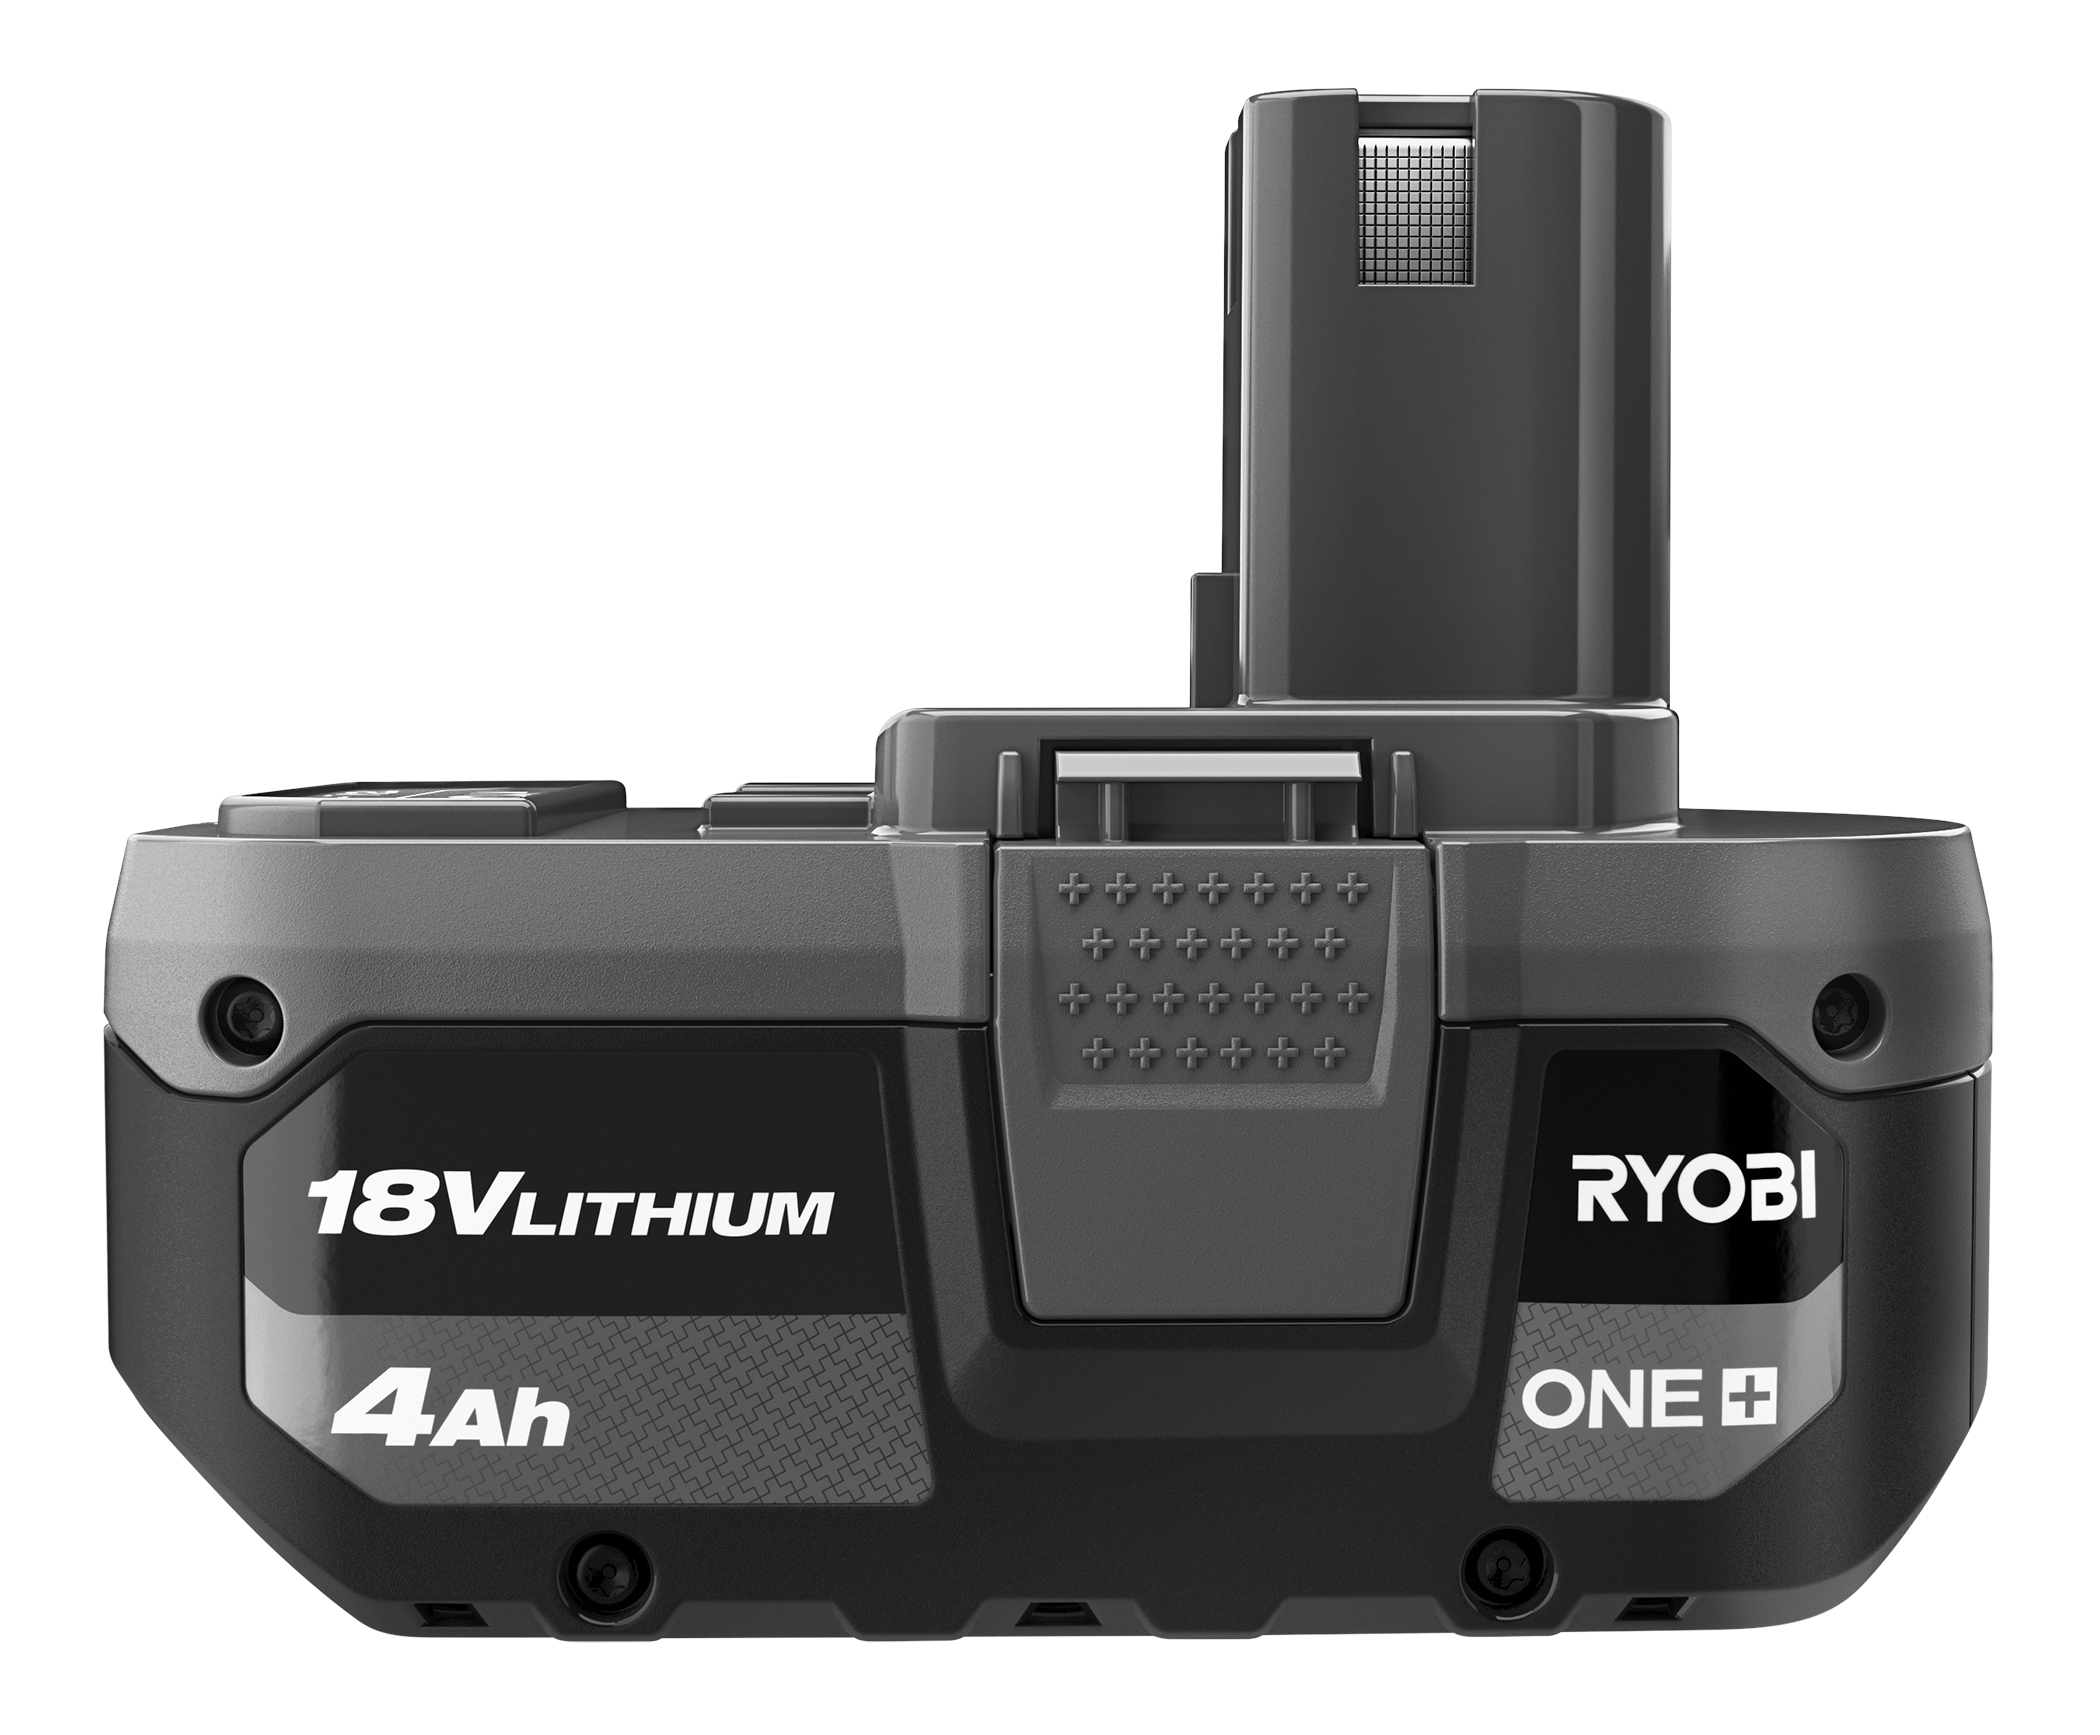 RYOBI 18v OnePlus Leaf Blower / Souffleur, Direct Digital